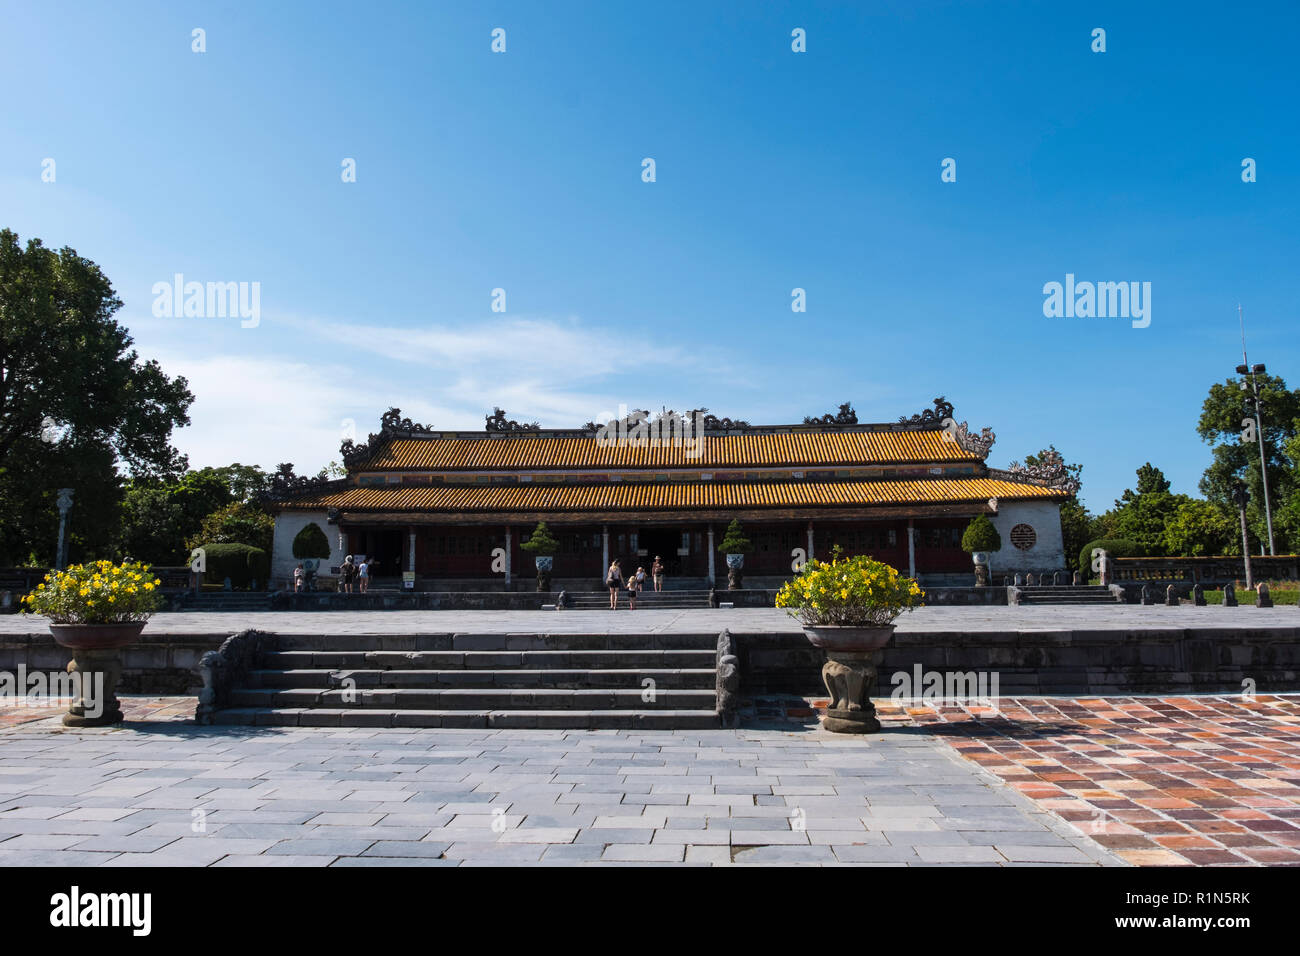 Le Palais Thai Hoa à l'intérieur de la citadelle fortifiée la Ville Impériale Hue Vietnam Asie Hoang thanh Site du patrimoine mondial de l'UNESCO Banque D'Images